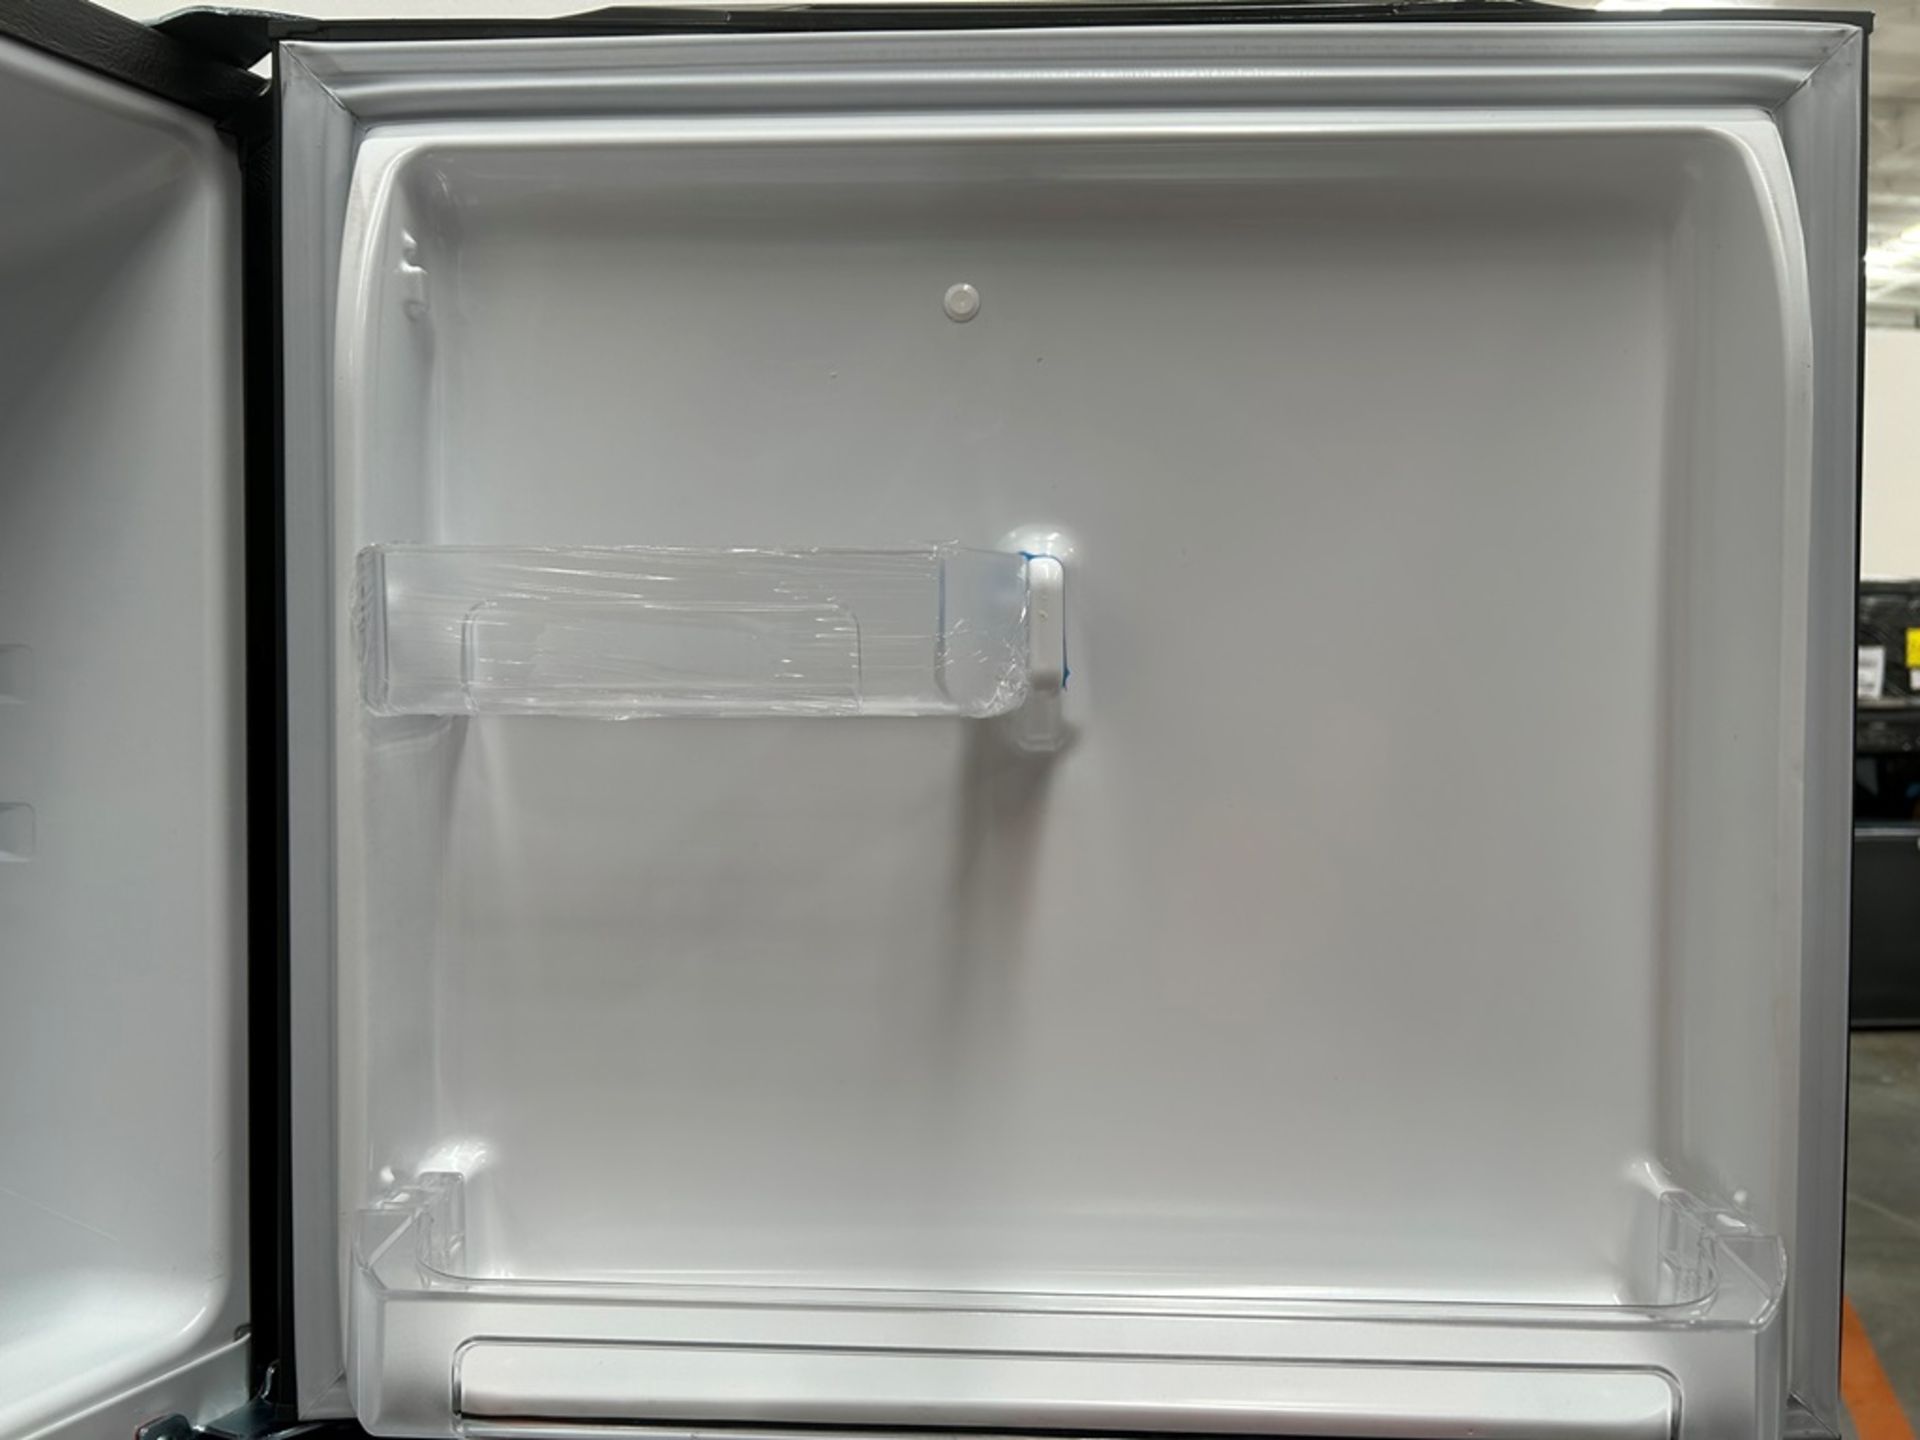 Lote de 2 refrigeradores contiene: 1 refrigerador Marca MABE, Modelo RME360FVMRMA, Serie 816455, Co - Image 6 of 18